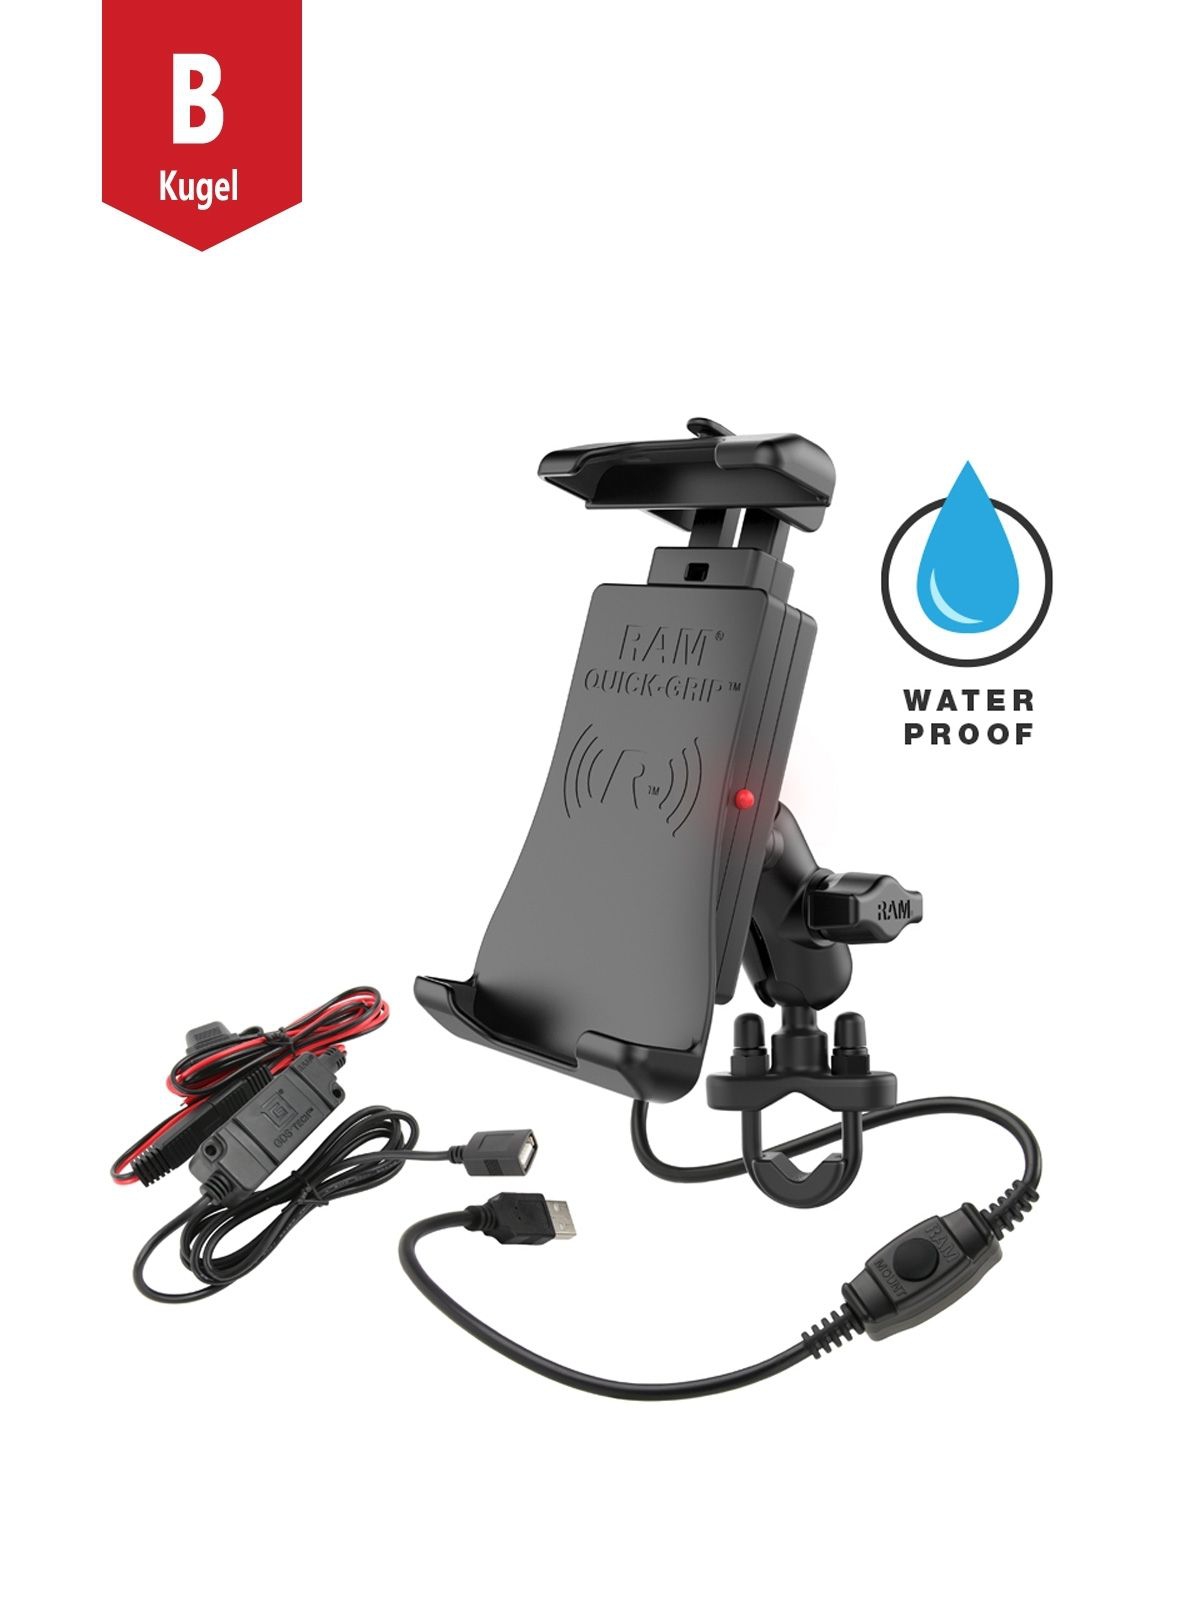 RAM Mounts Motorrad-Halterung (Rohre/Stangen) mit Quick-Grip Halteschale für Smartphones mit Ladefunktion - B-Kugel (1 Zoll), QI kompatibel, spritzwassergeschützt, inkl. Verkabelung